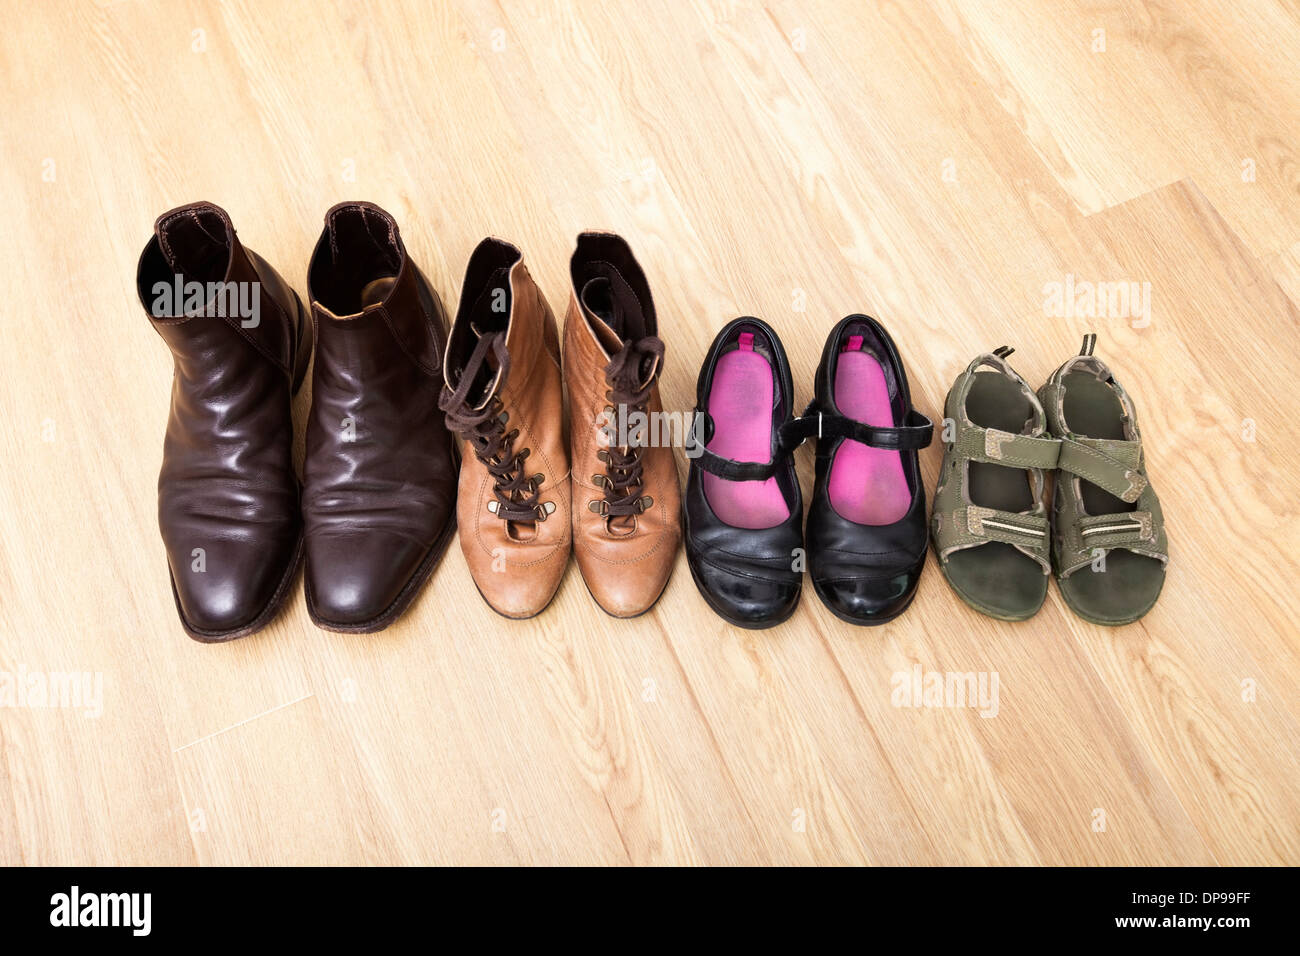 Familie Schuhe in einer Reihe auf Hartholz-Fußboden aufgestellt Stockfoto